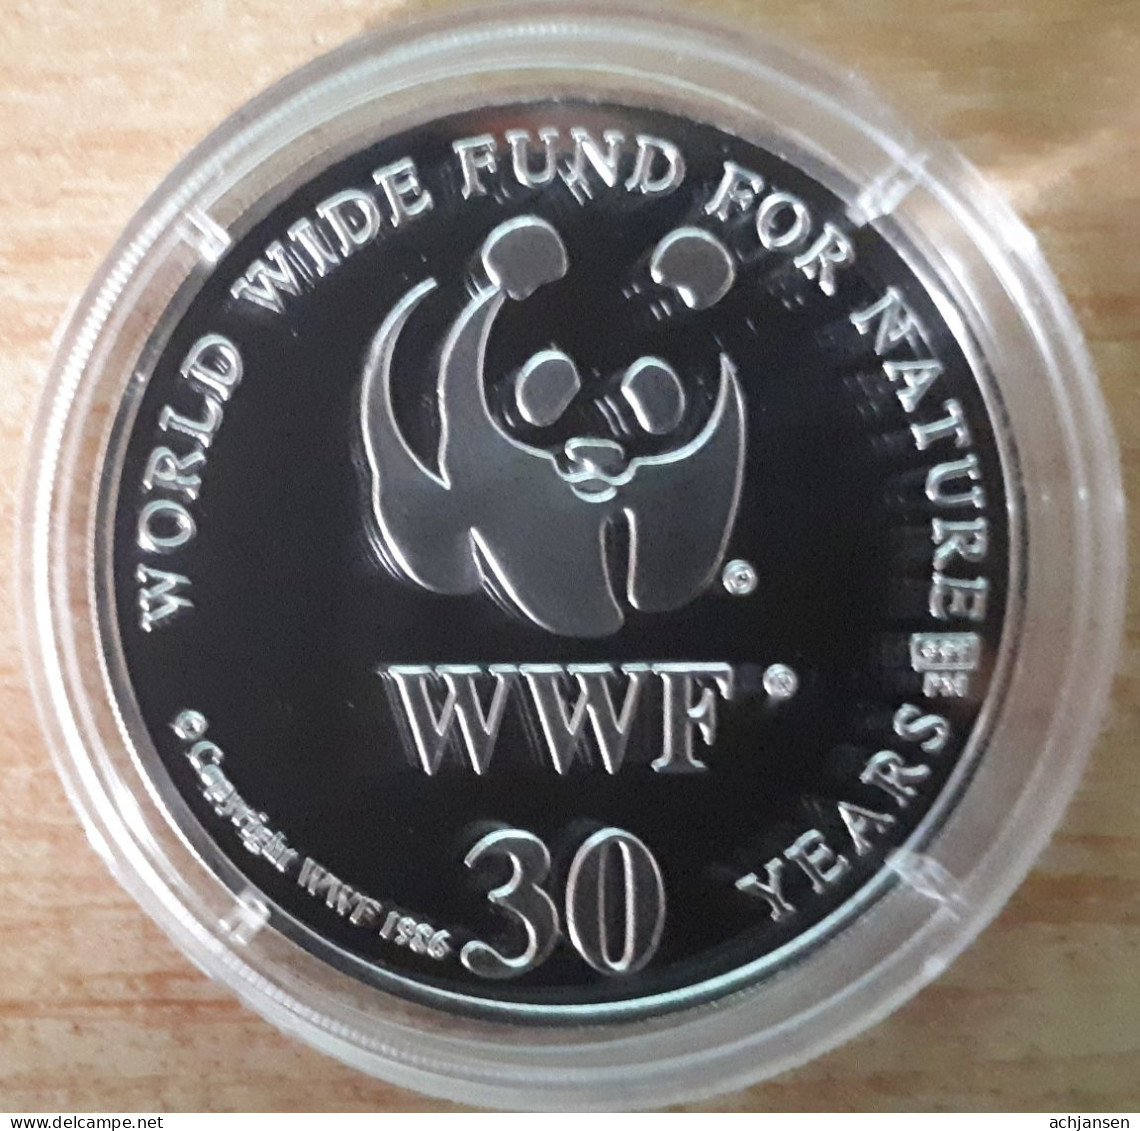 10 X WWF pure silver